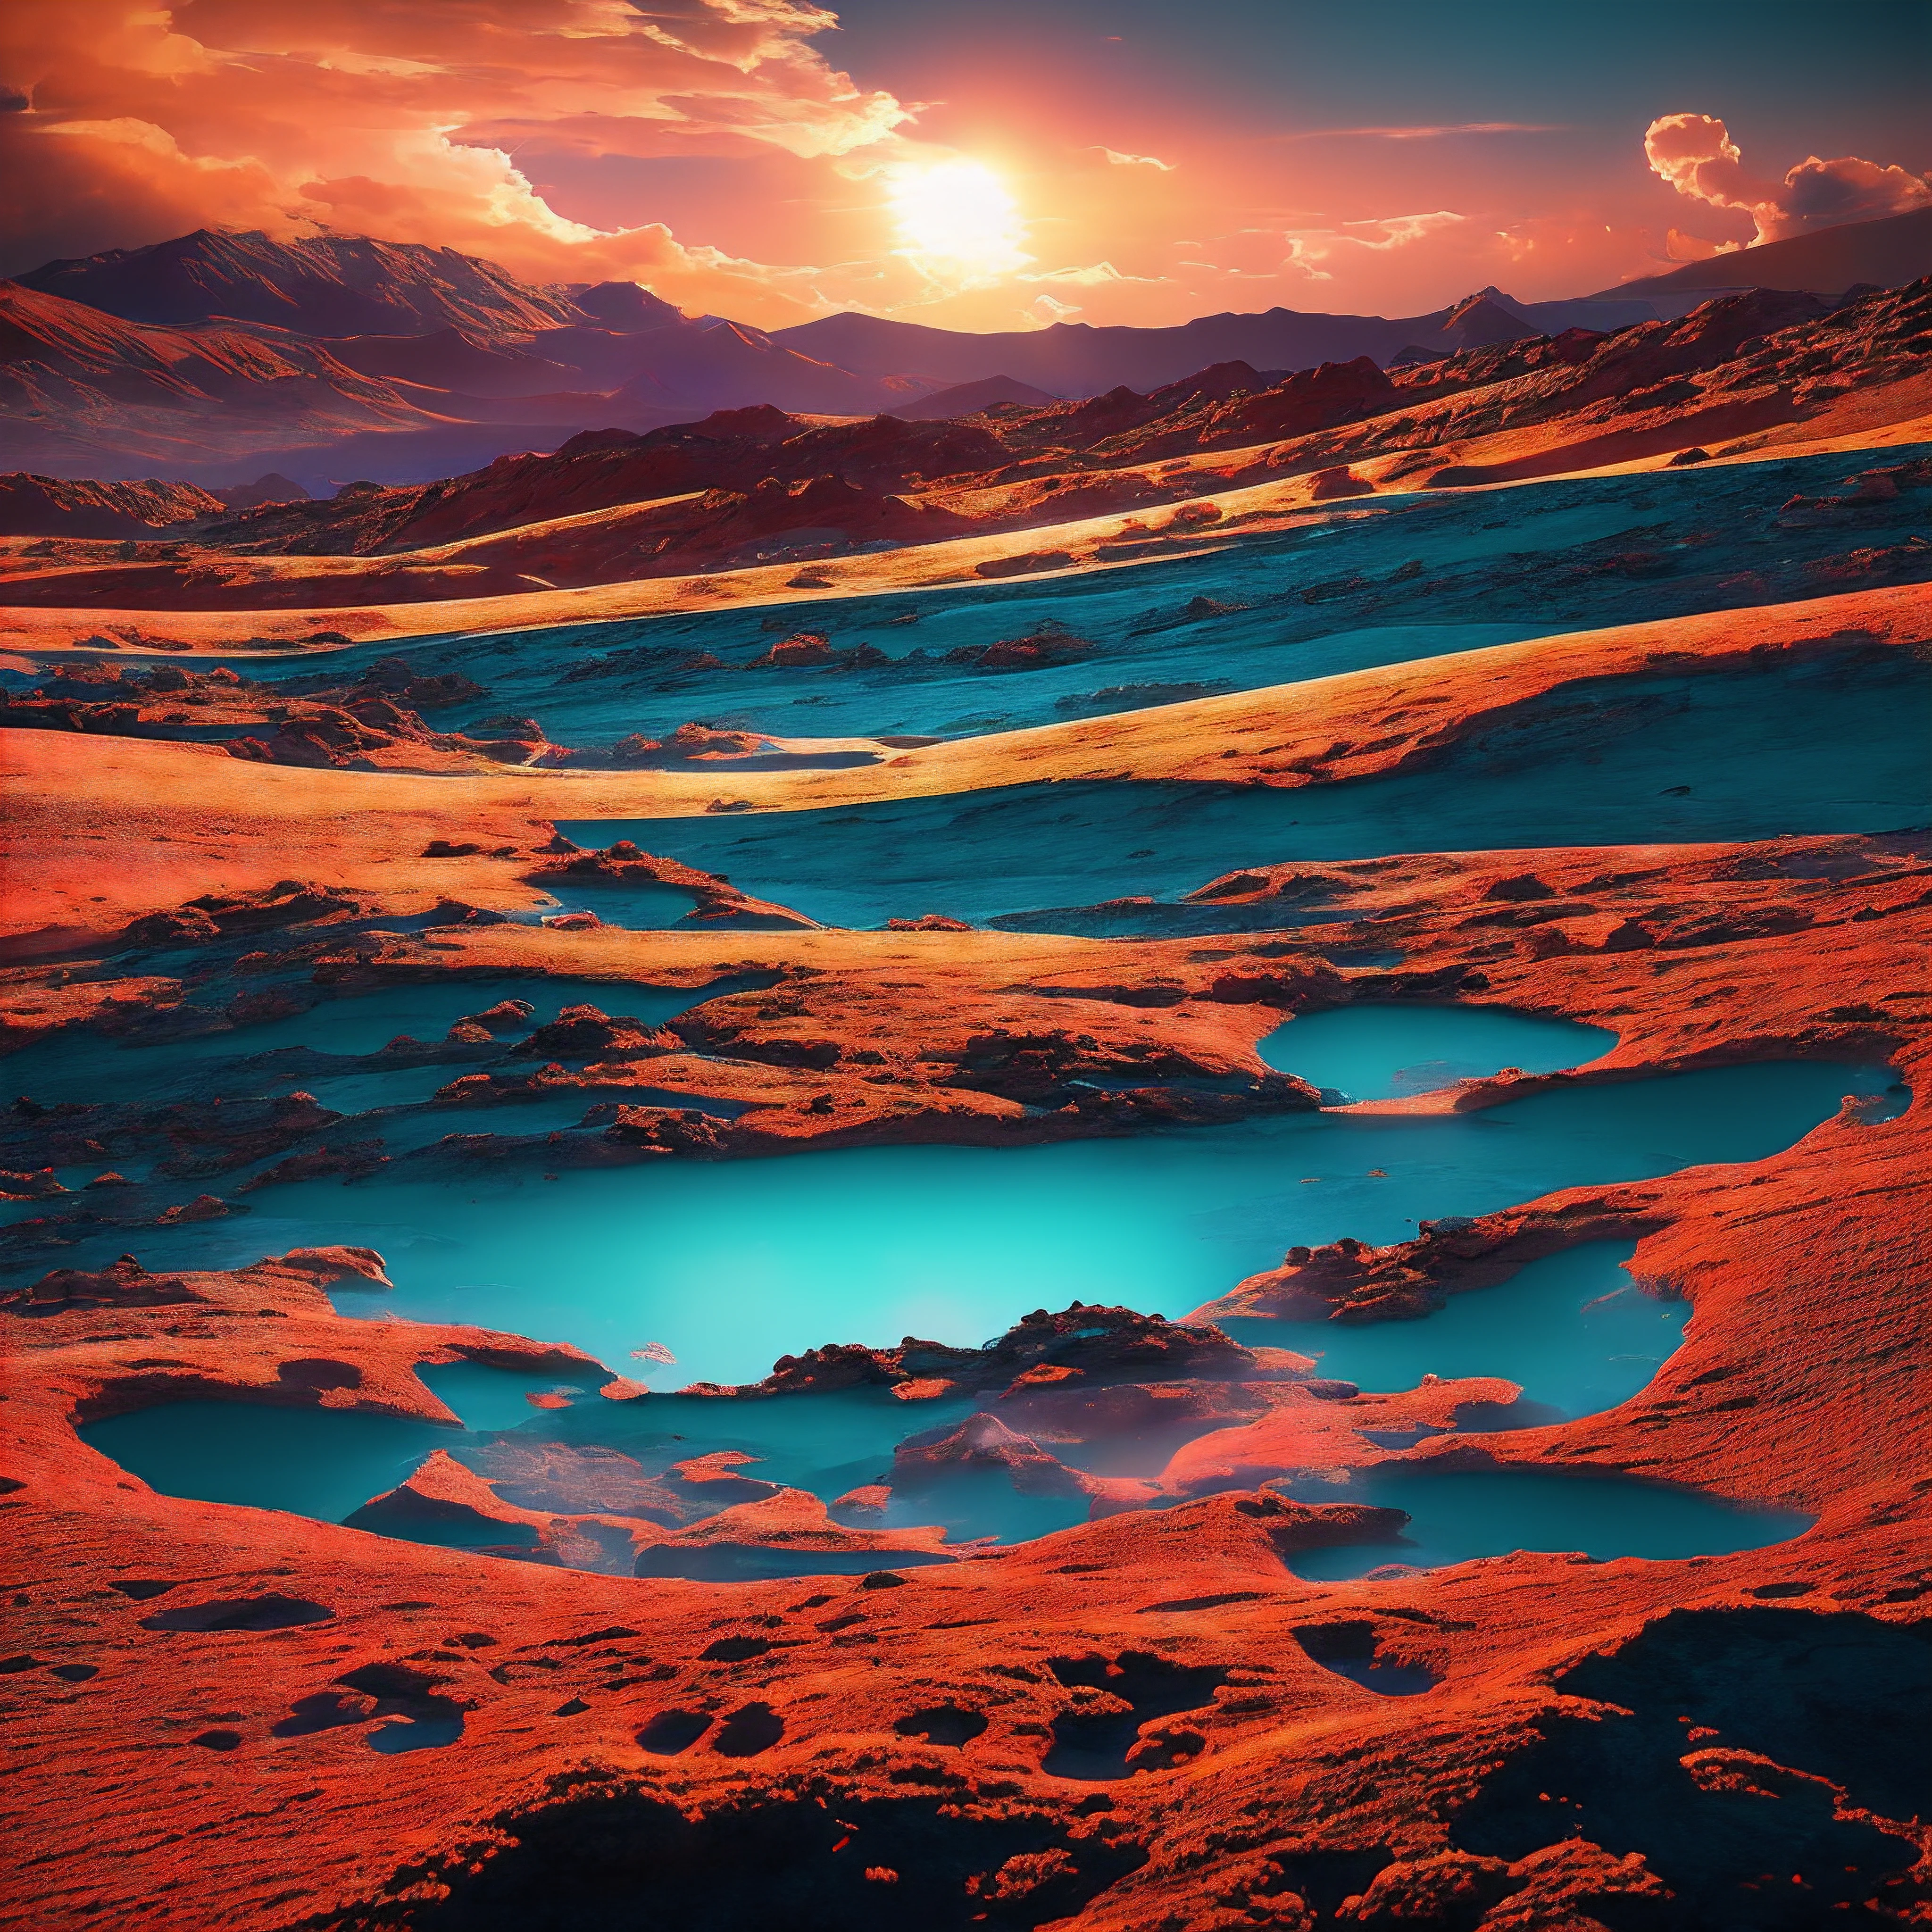 火星的深红色沙丘绵延数英里, 沐浴在粉色天空中悬挂的两轮月亮的光芒中. 散落在荒芜之地, 铁锈色的景观是大块的冰冷冰川, 在阳光下闪闪发光. 噼啪作响的闪电在稀薄的大气中疯狂地划过, 留下臭氧的气味.

一种好奇的生物在这片陌生的土地上缓慢地行走. 它有着土鹿般的温柔特征, 黑色的大眼睛和抽动的鼻子. 但它的毛皮却被染成了漩涡般的红色, 橙子, 藍色的, 绿色和紫色, 几乎模仿附近的宇宙尘埃云. 它伸出的鹿角更像是开花的藤蔓，而不是骨头.

彩虹鹿漫步穿过被石头锁着的石化森林, 冰冷的峡谷发光的青色, 和闪闪发光的墨黑色液体的冒泡池塘. 它以生长在峡谷壁上的发光地衣为食，并从乳白色发光的溪流中喝水. 在遠處, 在三颗重叠的卫星的照耀下，火山向天空喷出炽热的余烬.

风景在不断变化, 呼啸的尘暴让位给从岩石土壤中随机喷发的雾气间歇泉. 然而彩虹鹿却没有注意到, 平静地探索这个现在居住着它的外星世界. 它的棱柱色彩在毫无生气的红色岩石和赭色沙子的衬托下显得格外耀眼. 遥远世界上的活生生的彩虹.